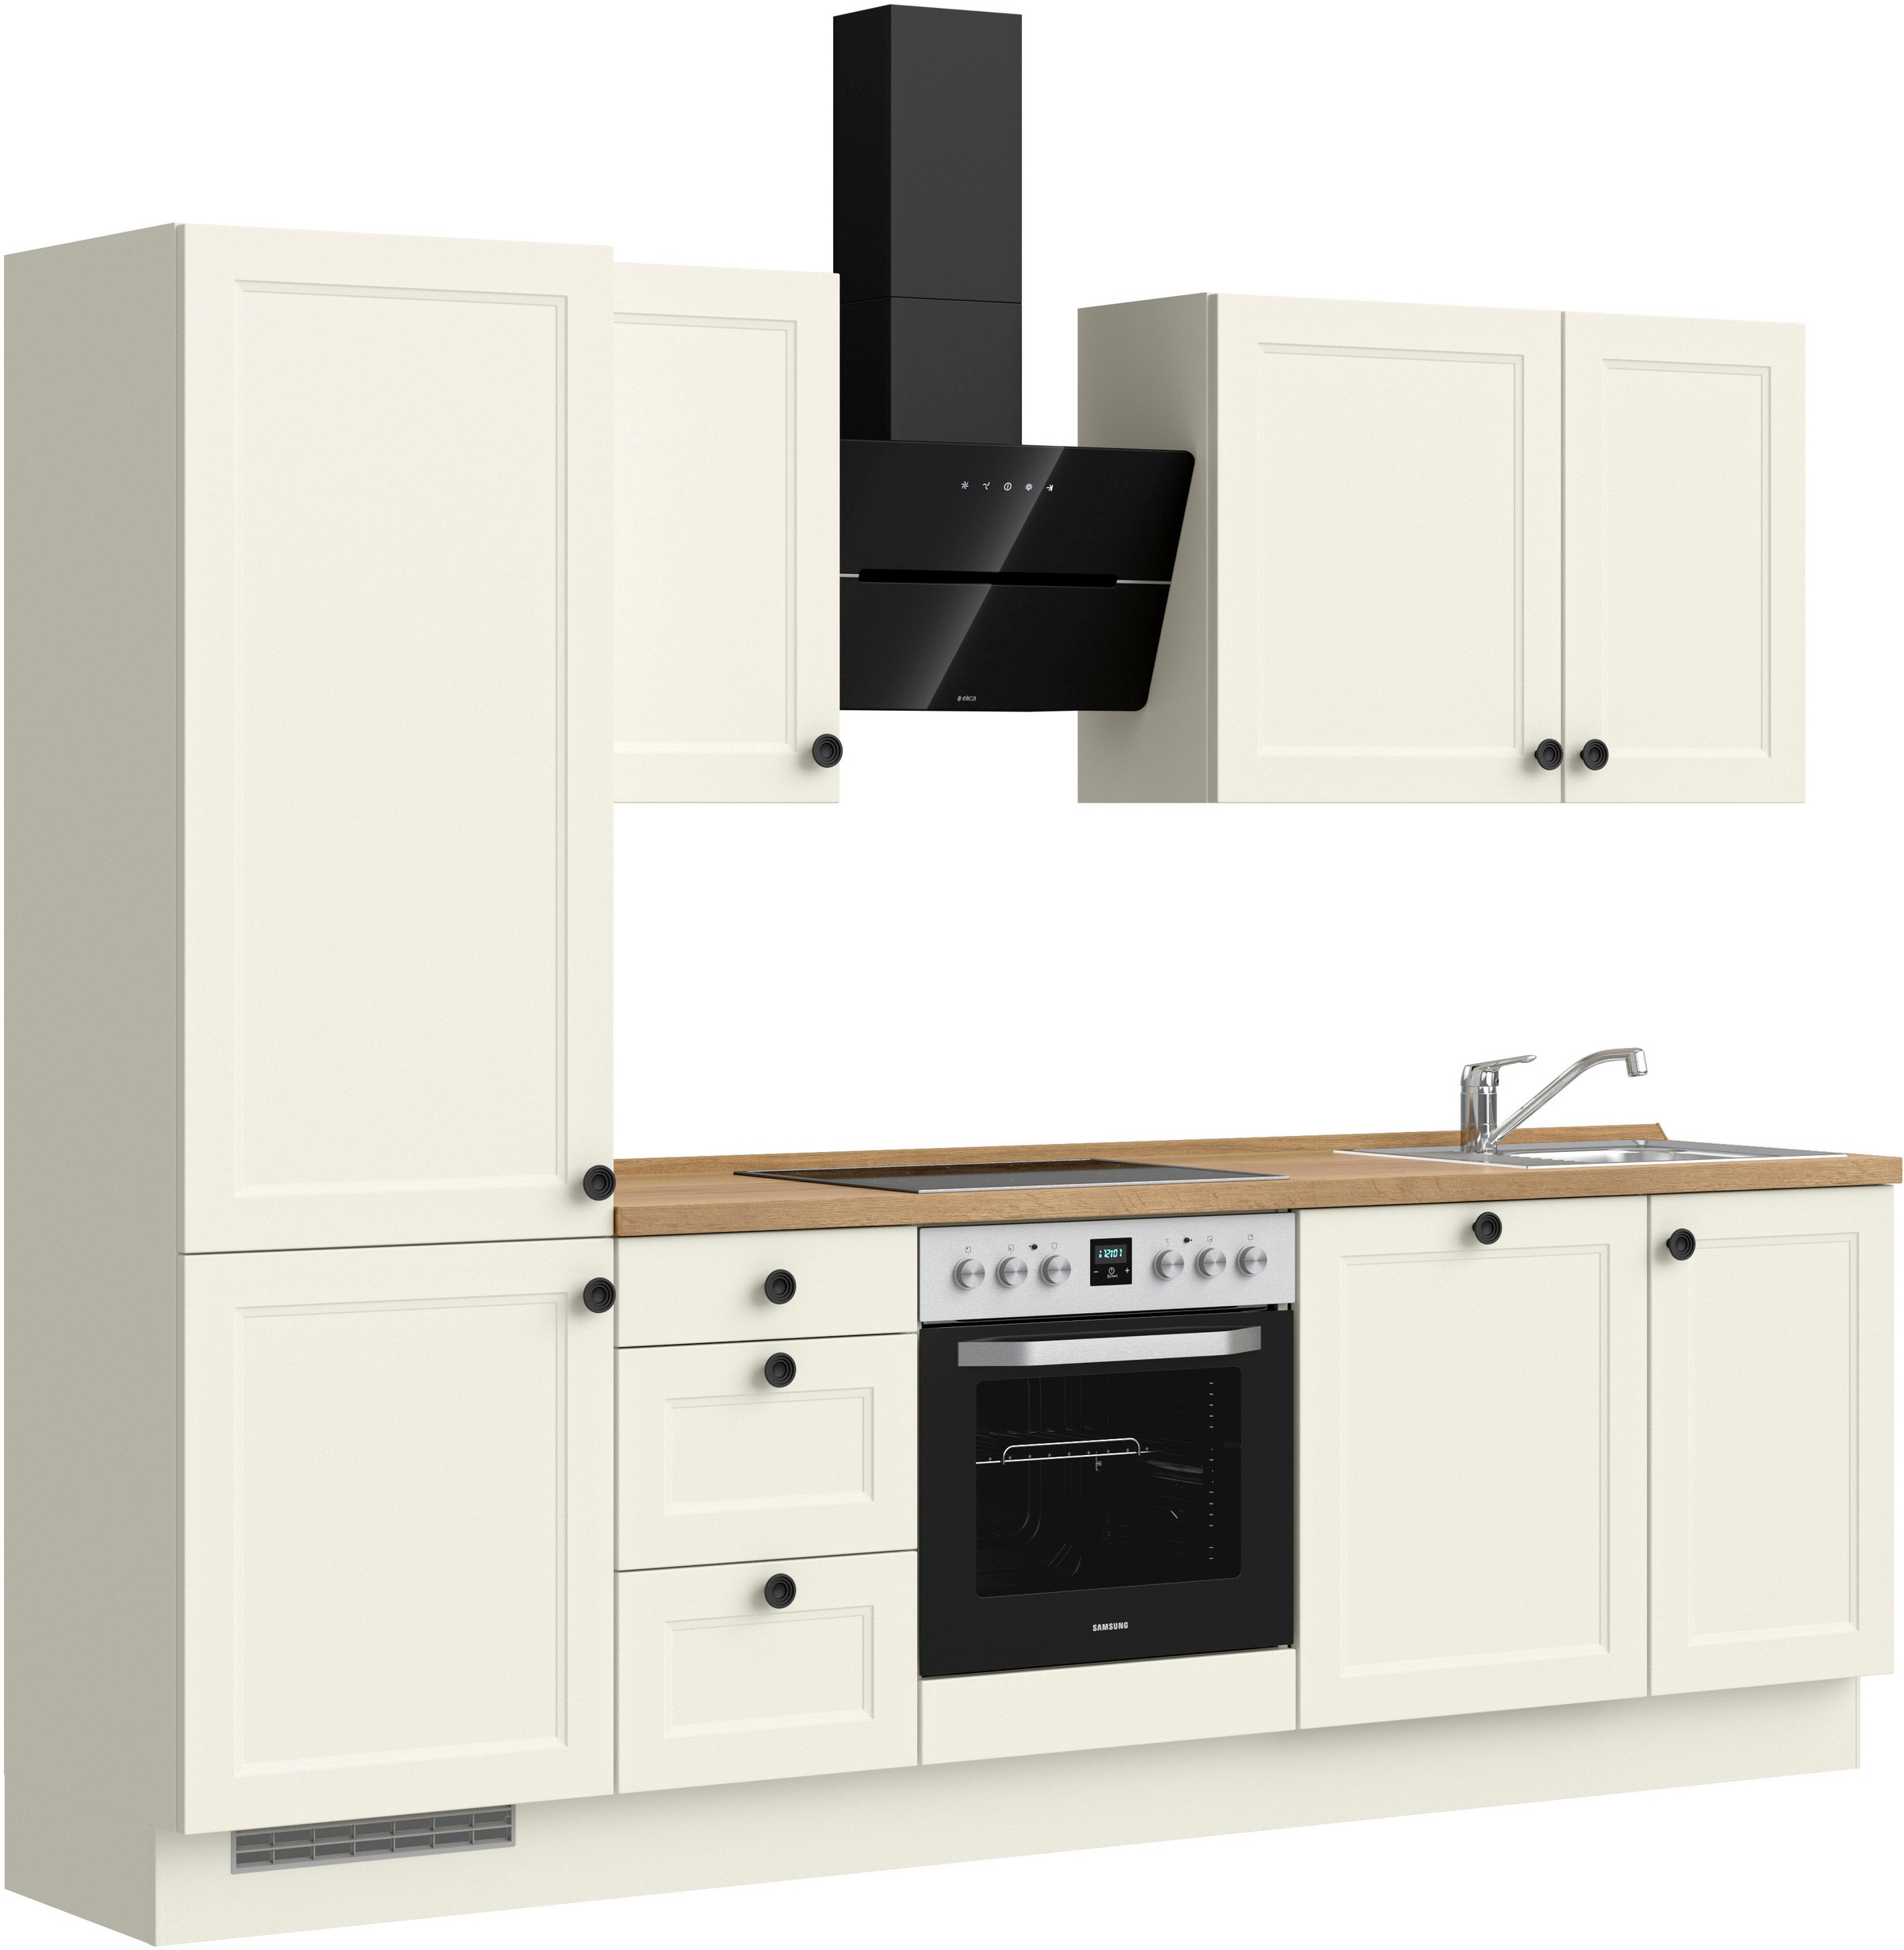 nobilia® Küchenzeile »"Cascada premium"«, vormontiert, Ausrichtung wählbar, Breite 270 cm, ohne E-Geräte